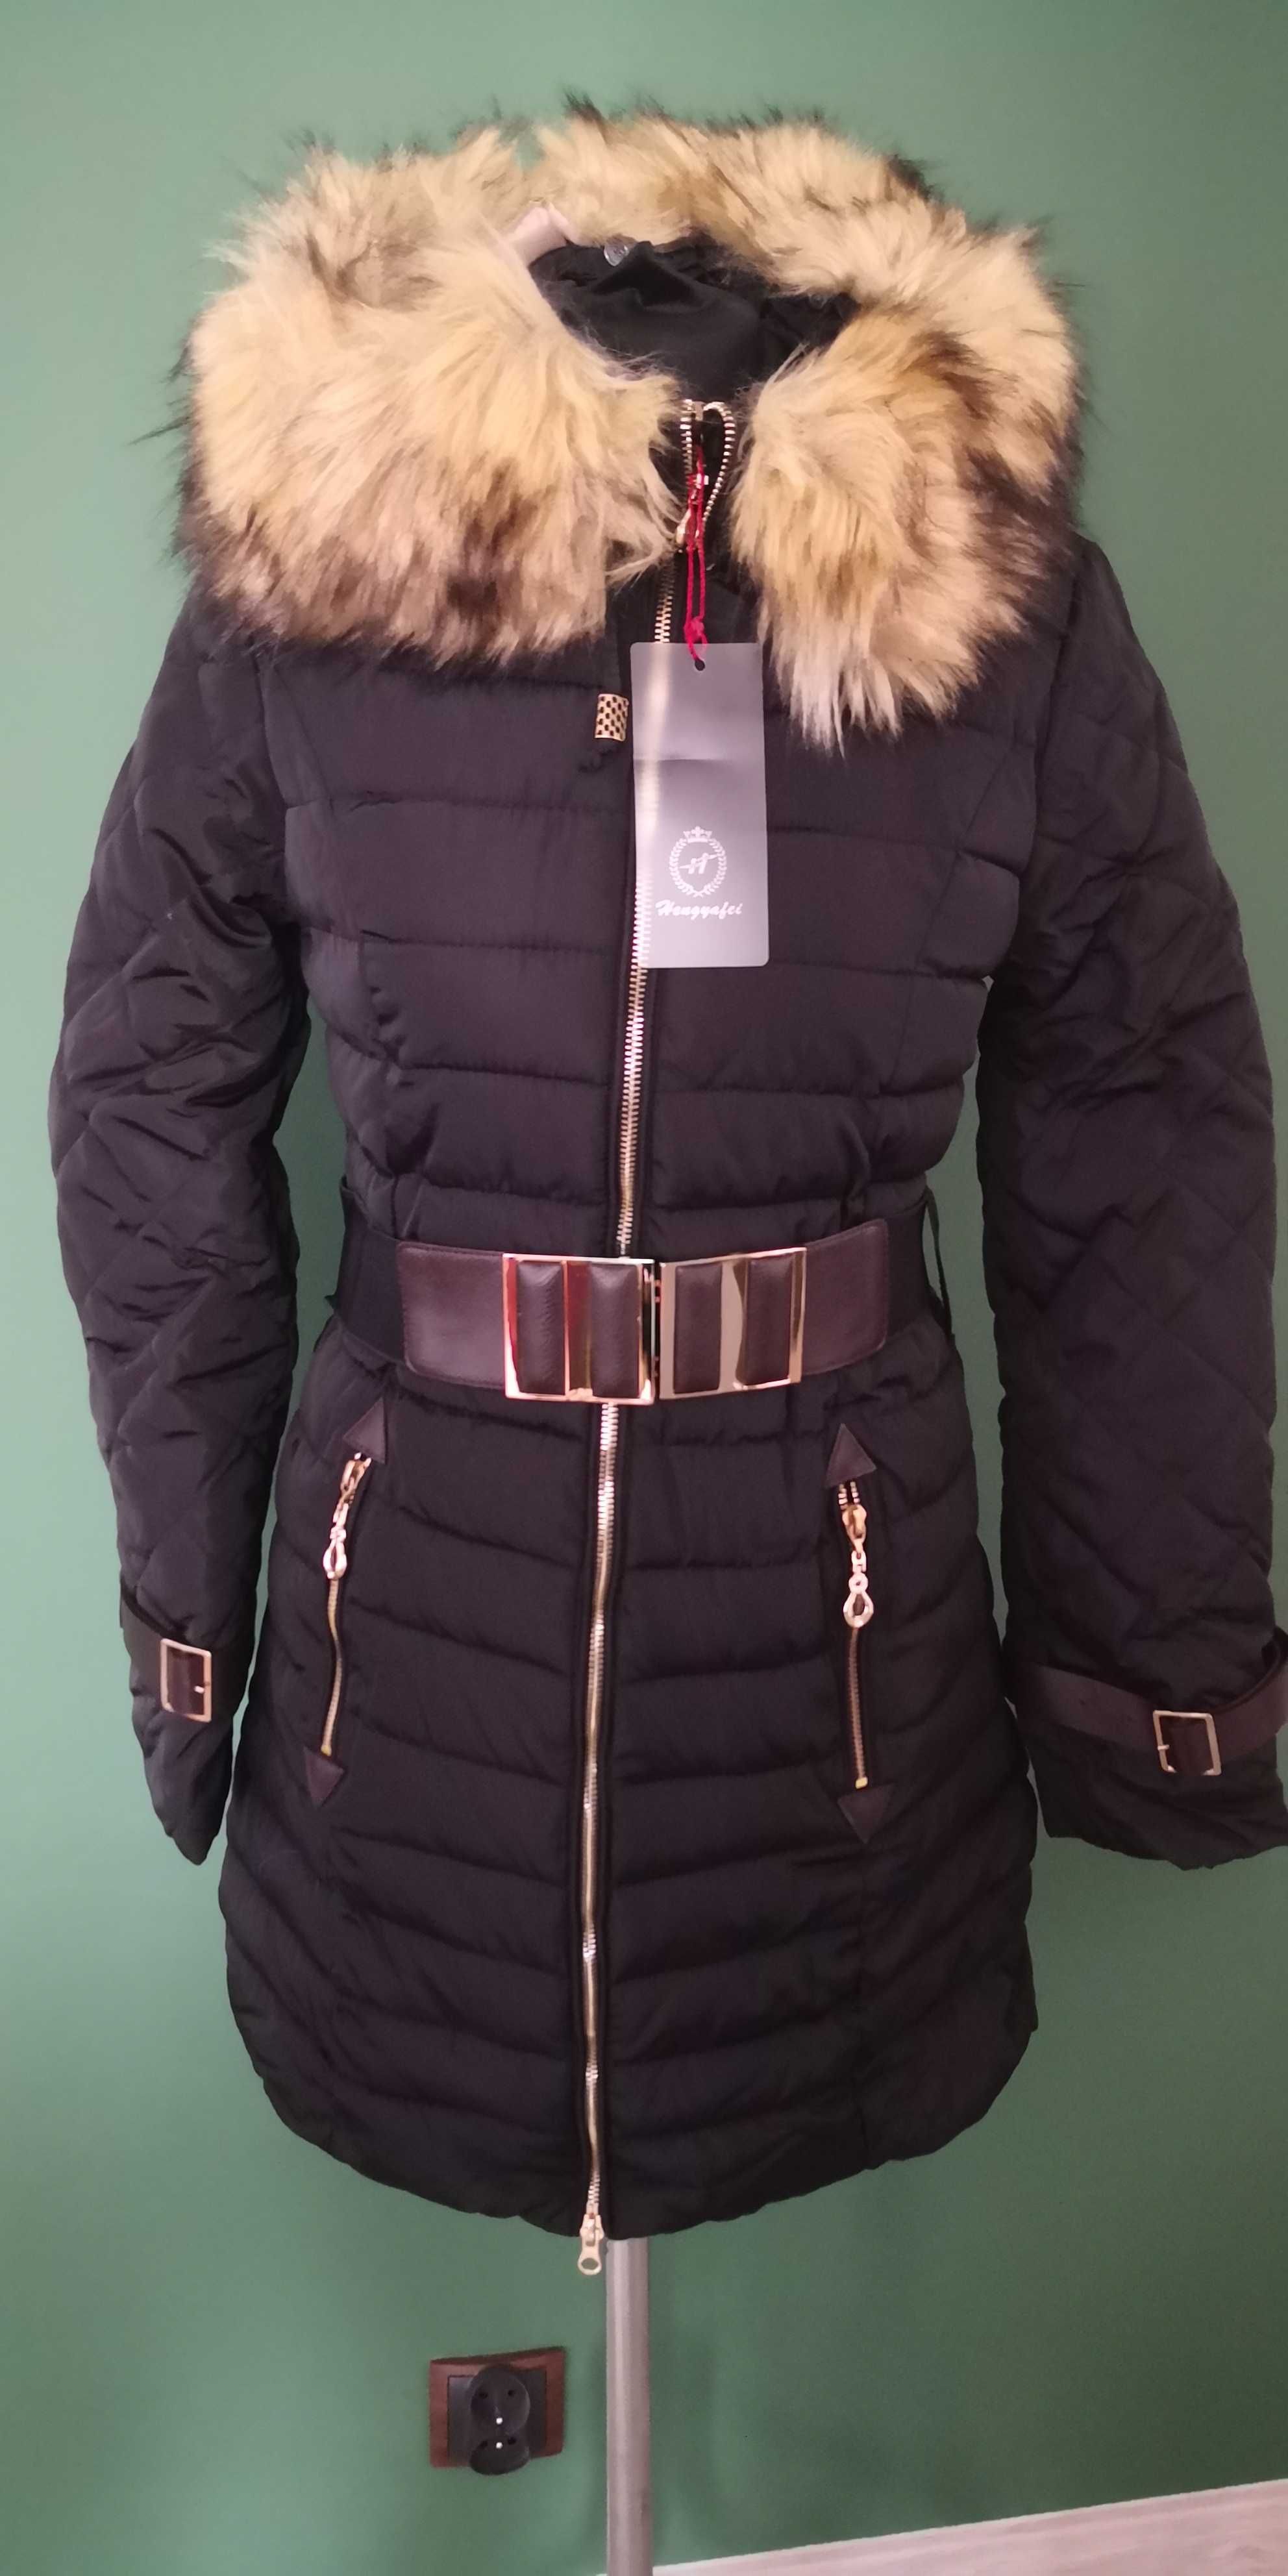 Nowa kurtka ciepła futro kaptur klasyczna piękny model +pasek